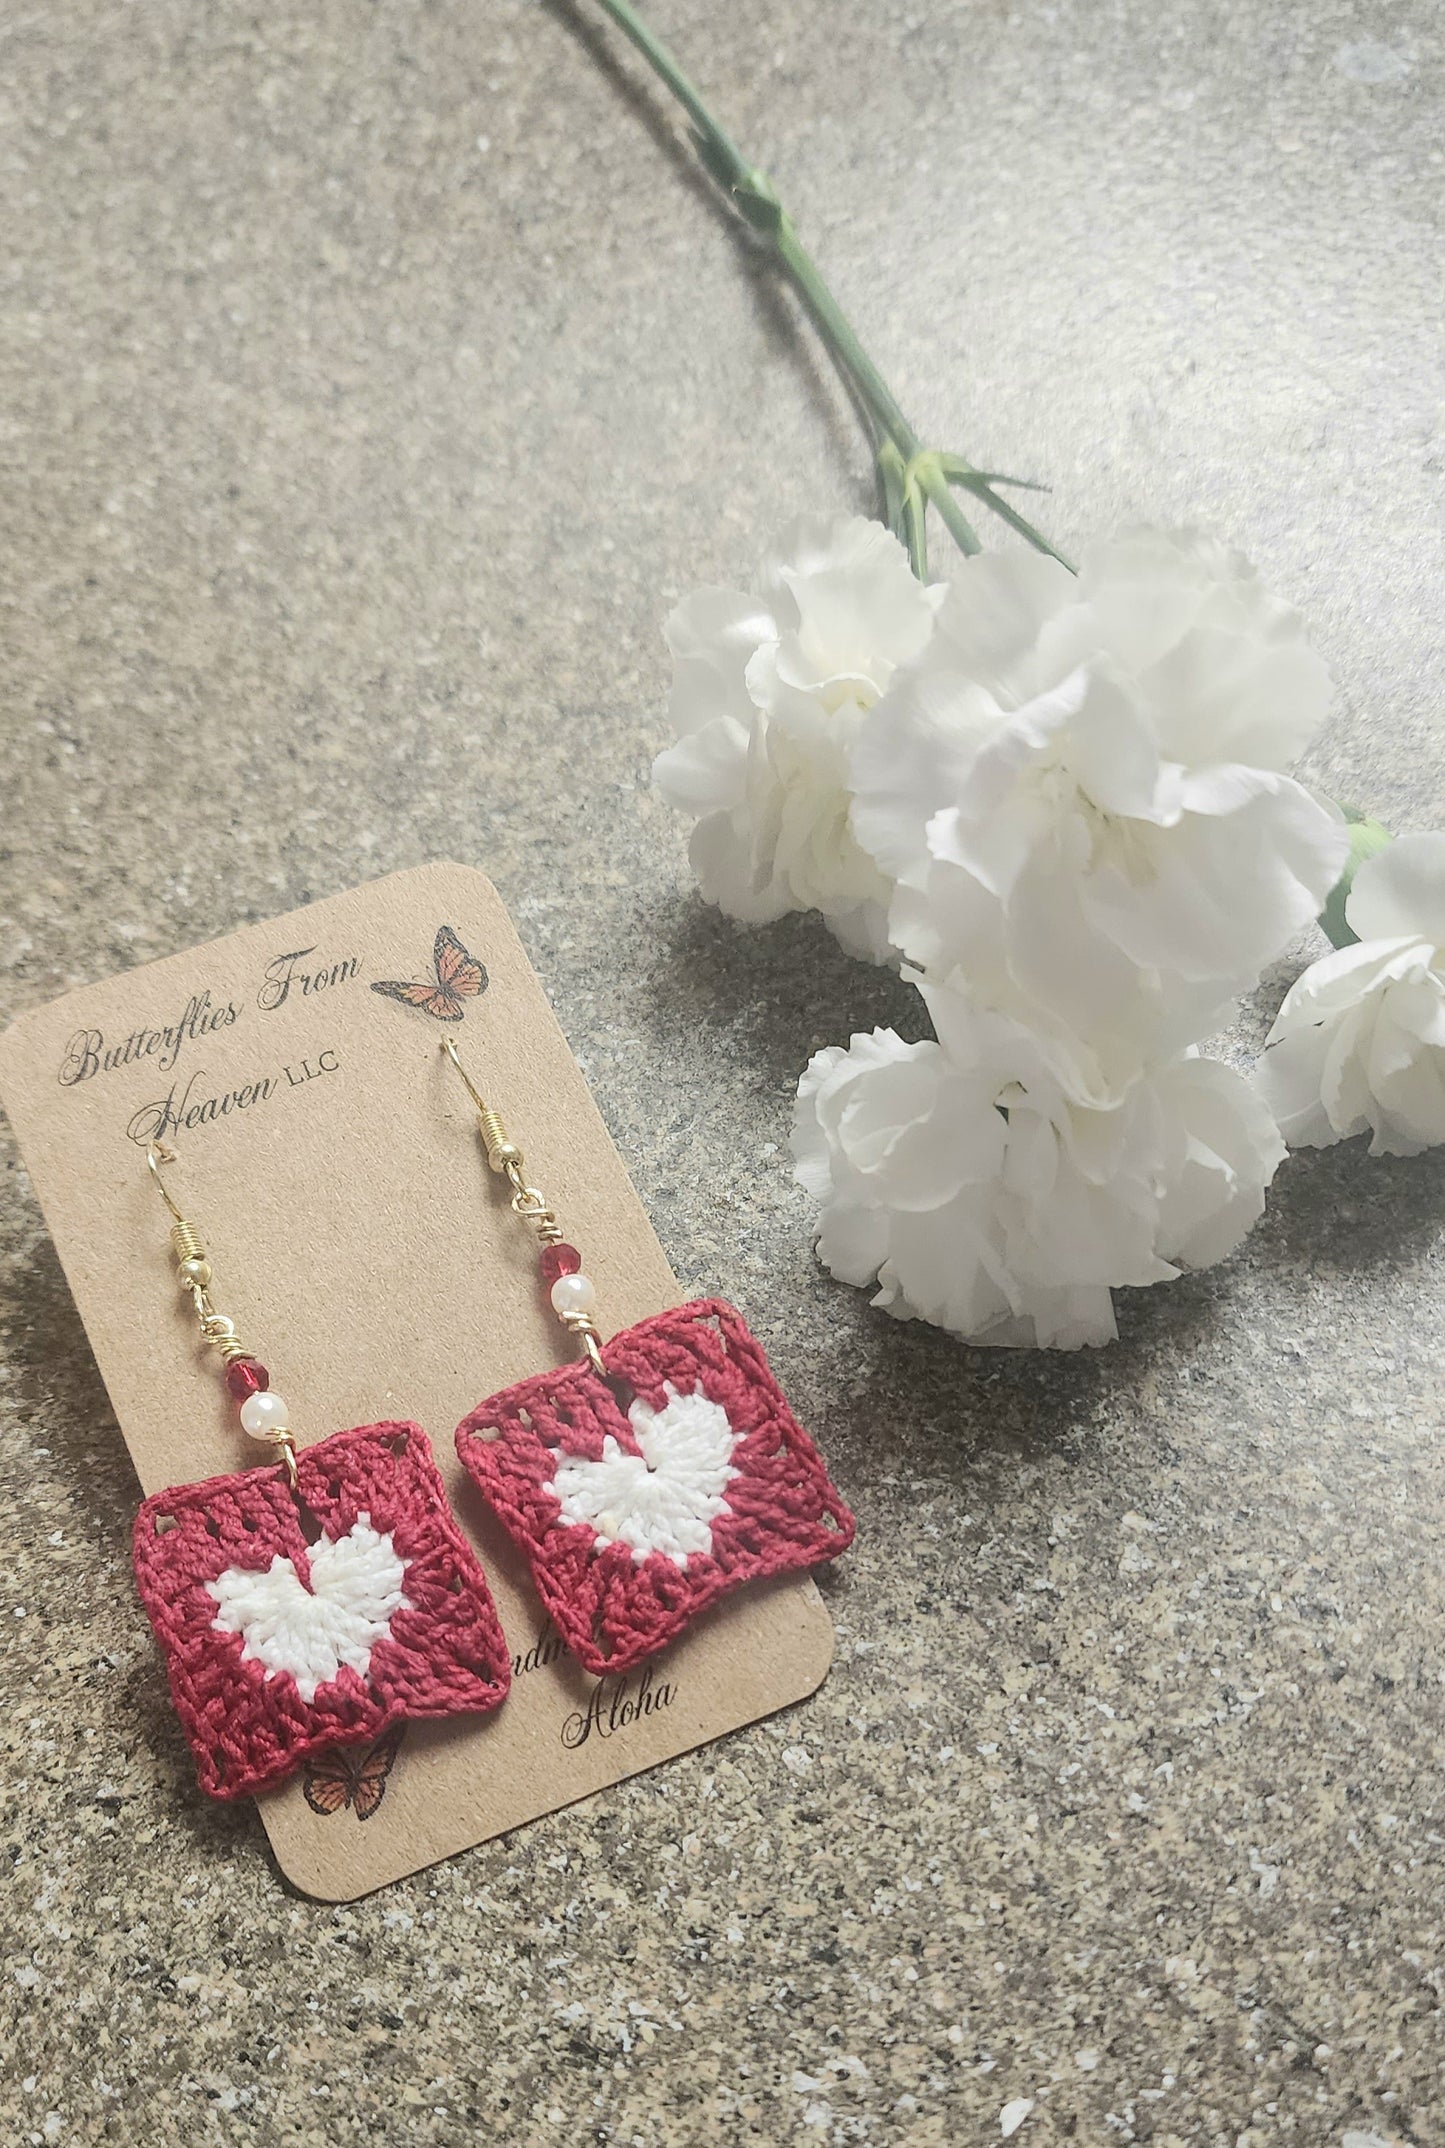 Granny Square Heart earrings - BUTTERFLIES FROM HEAVEN LLC